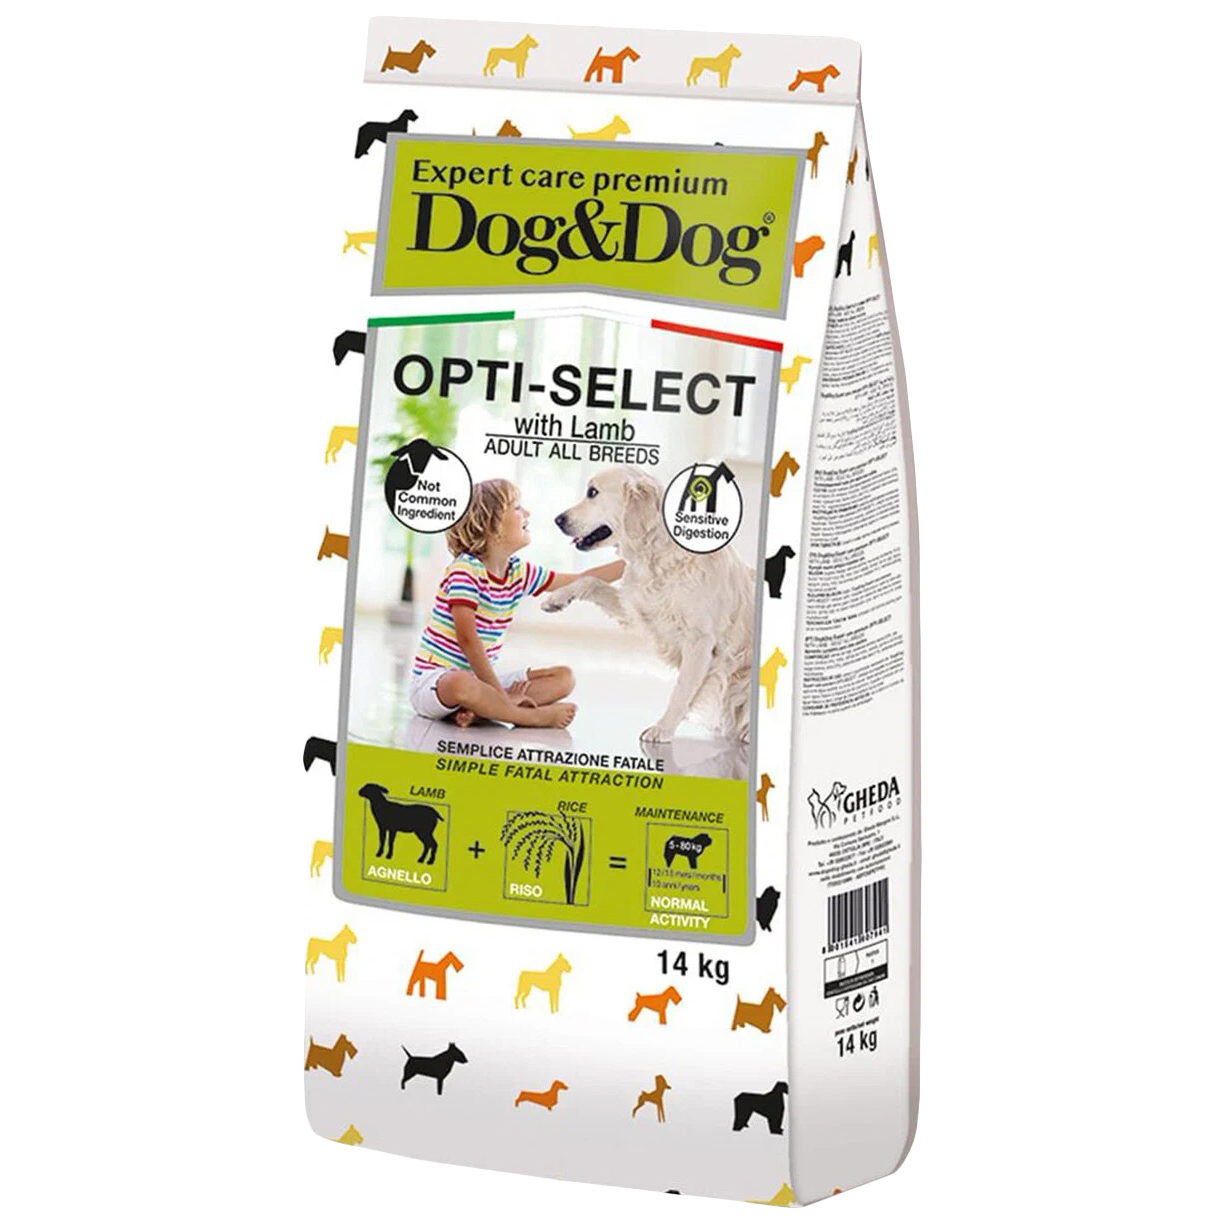 Сухой корм Dog & Dog Opti-Select для взрослых собак, с ягнёнком, 14 кг